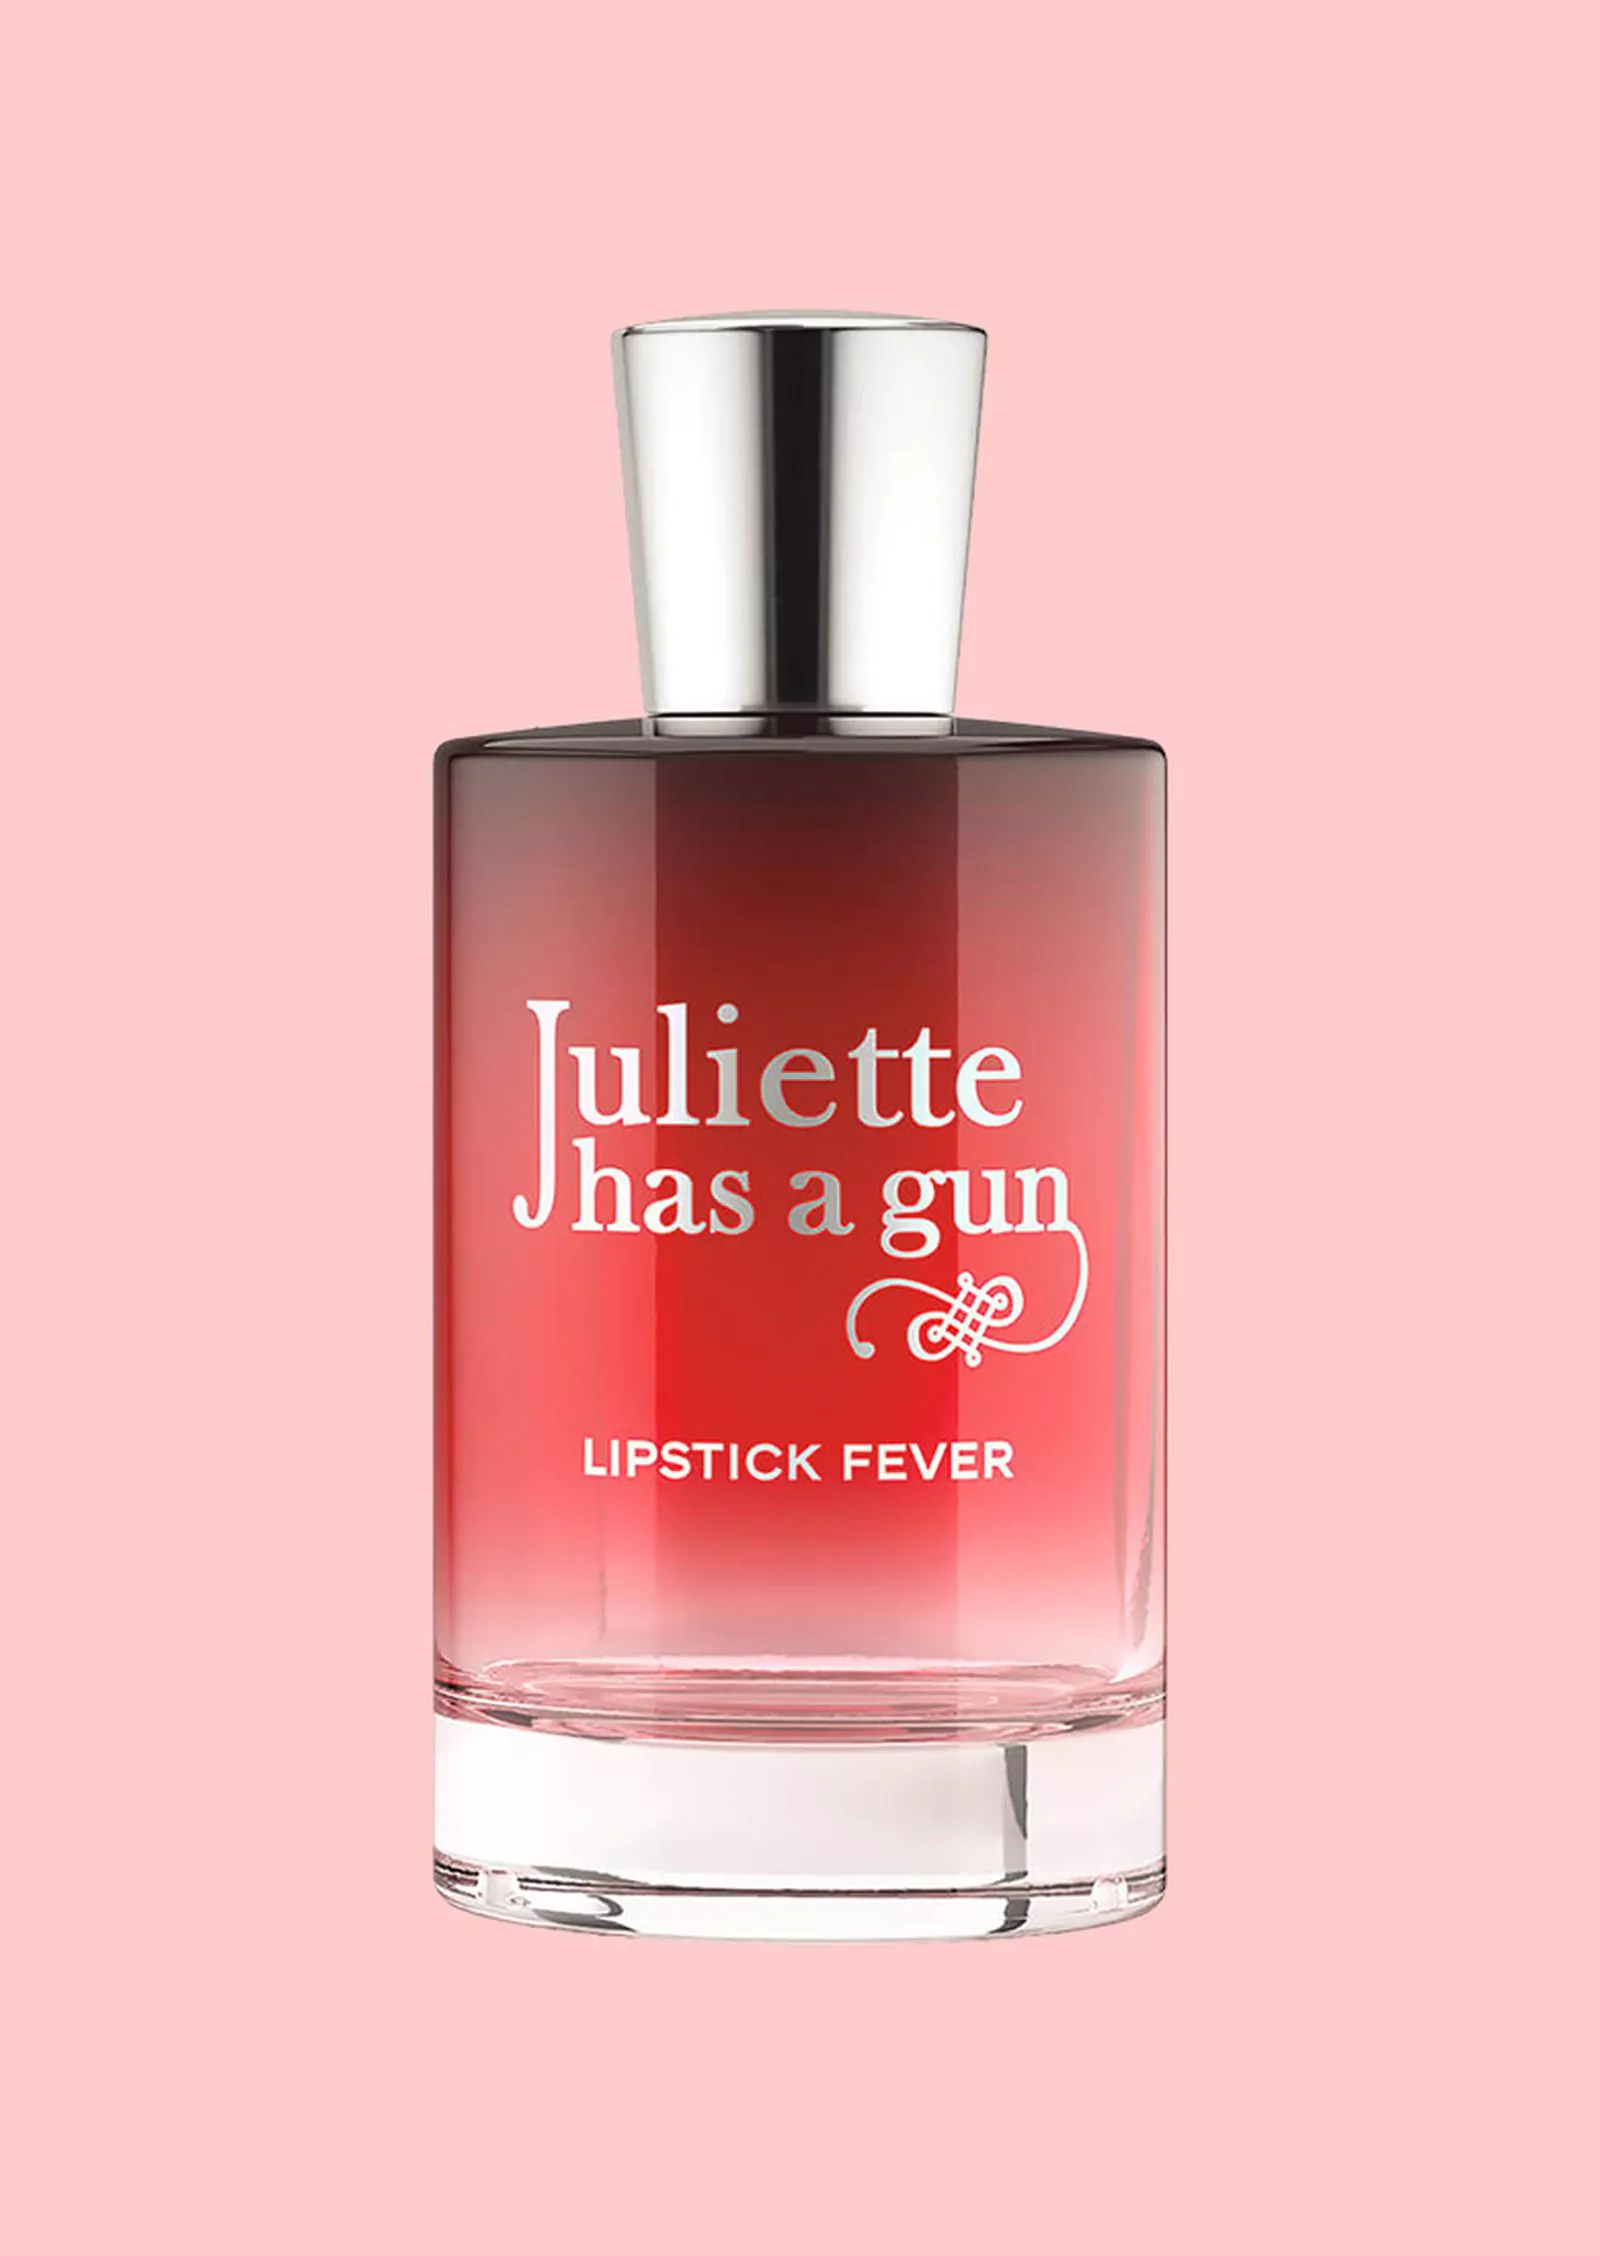 Juliette Has a Gun Lipstick Fever